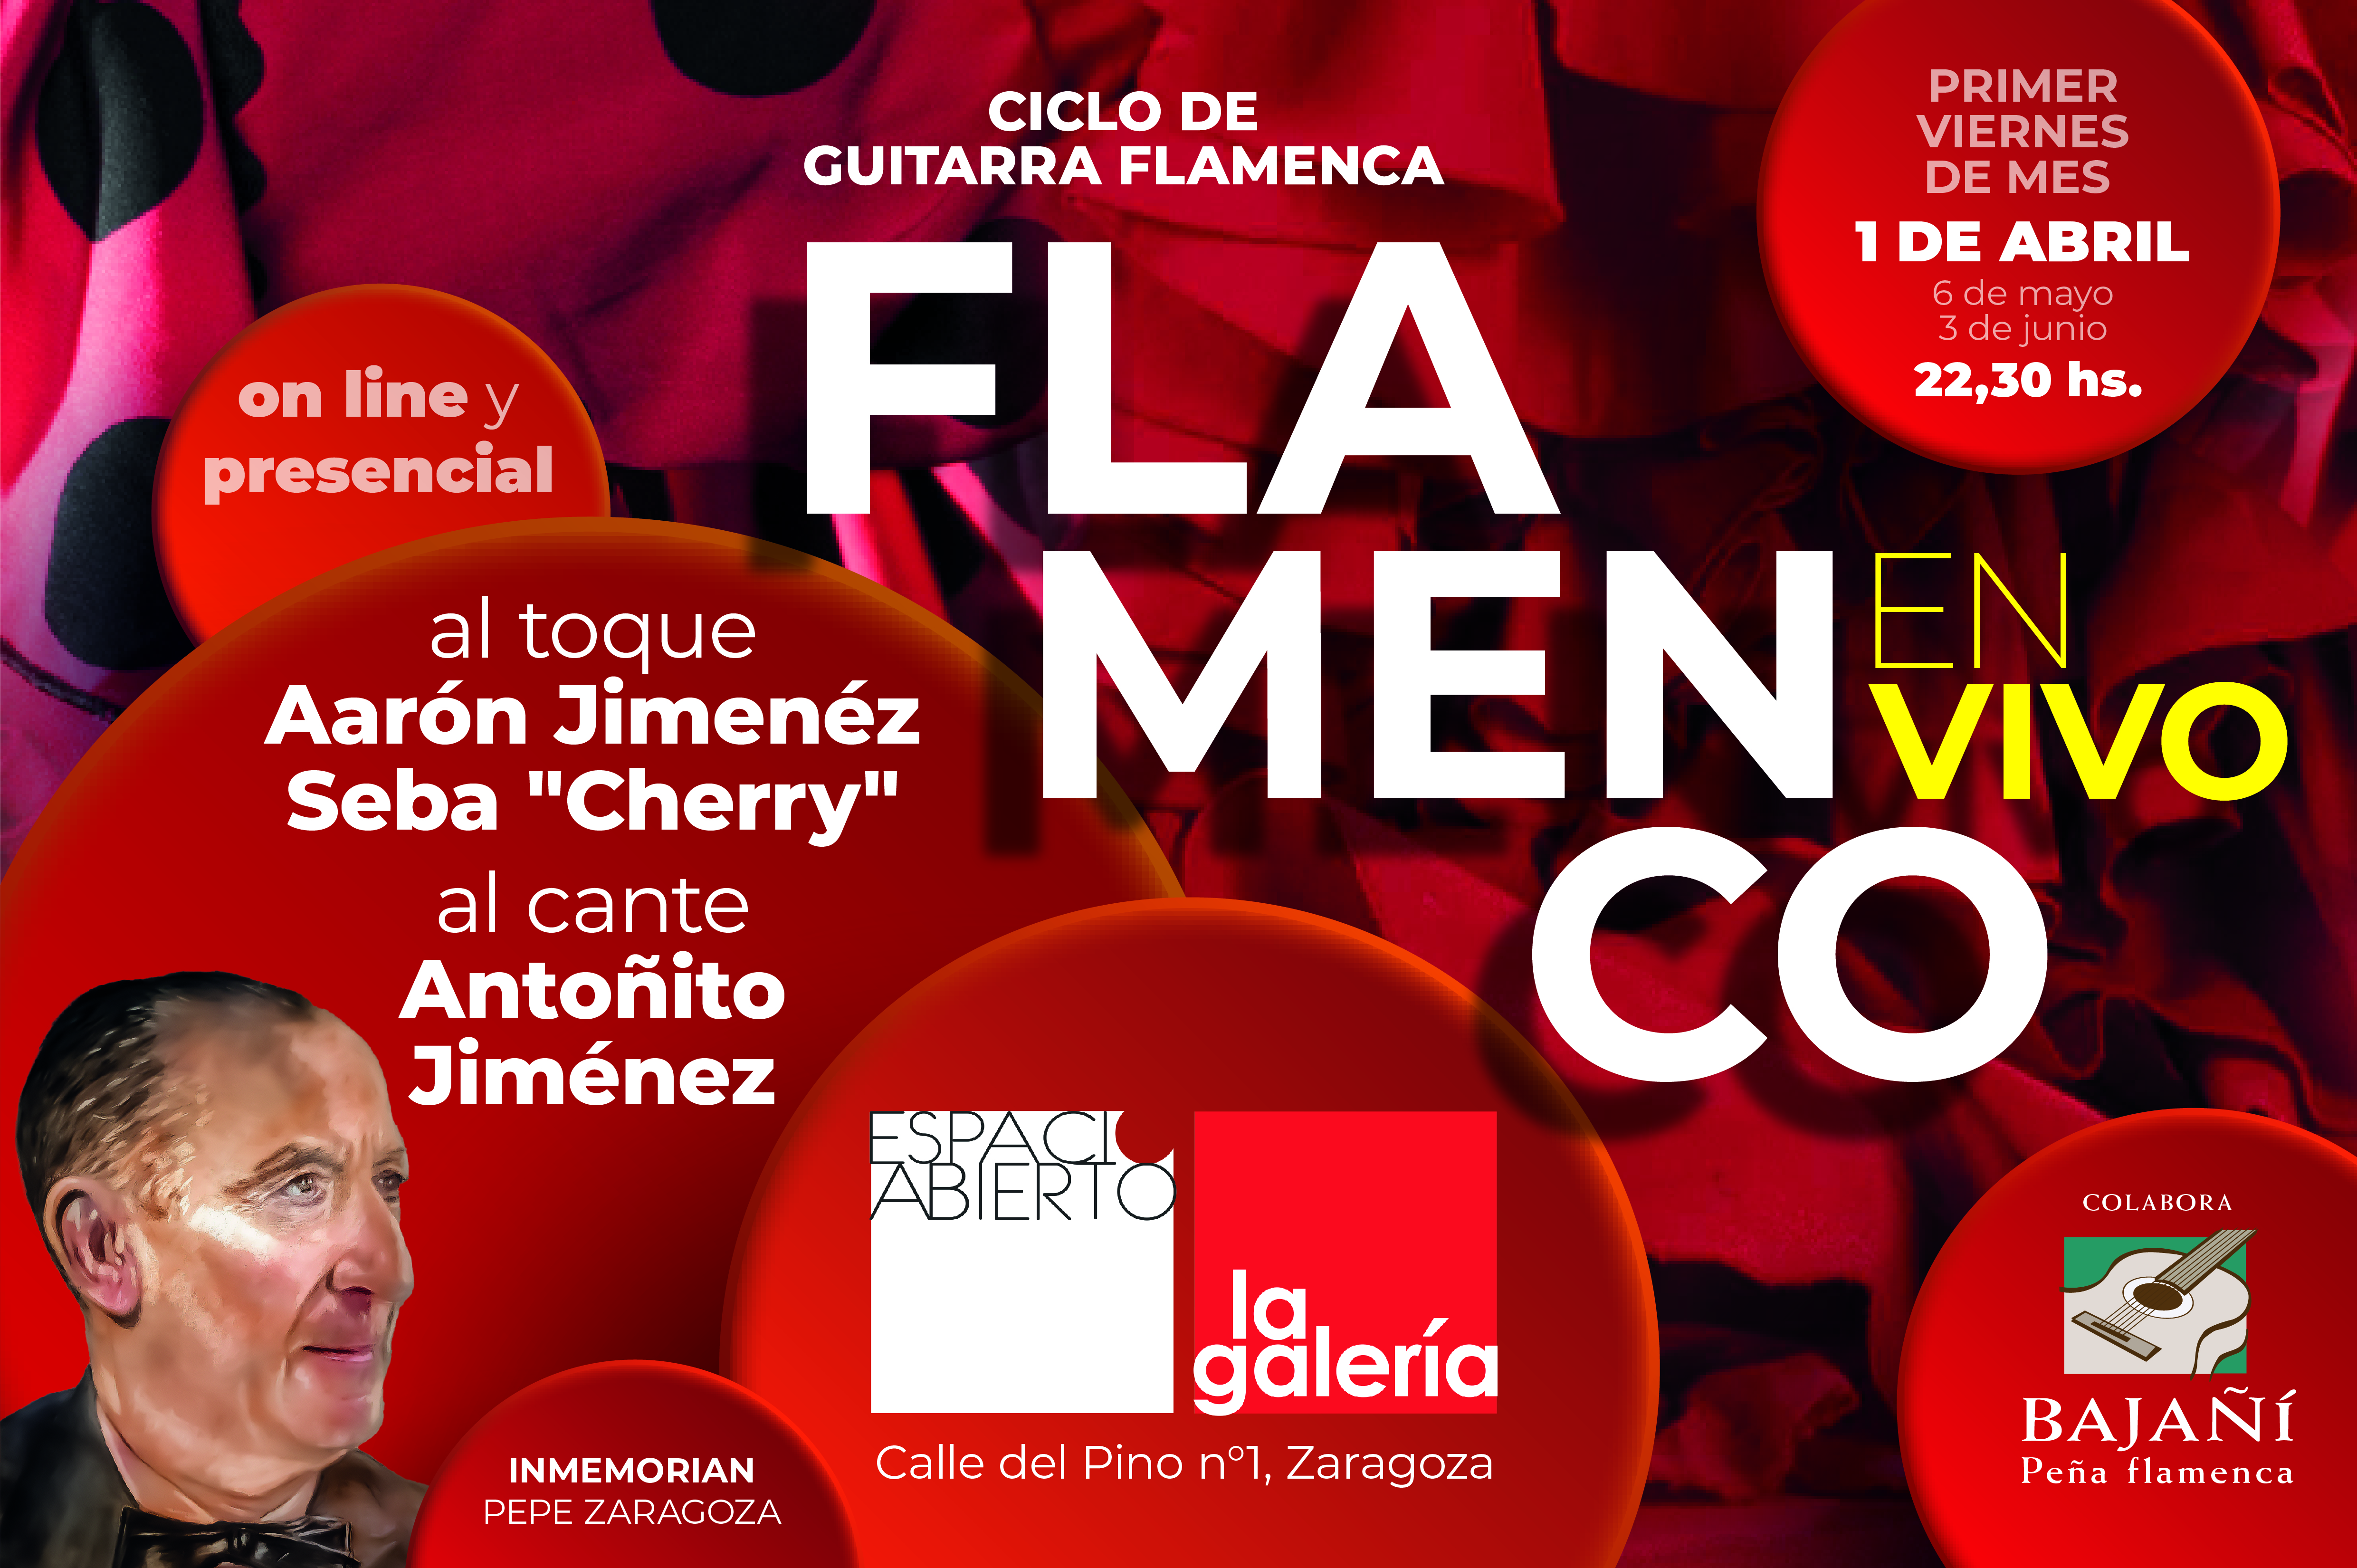 Espacio abierto la galeria flamenco_en_vivo.jpg